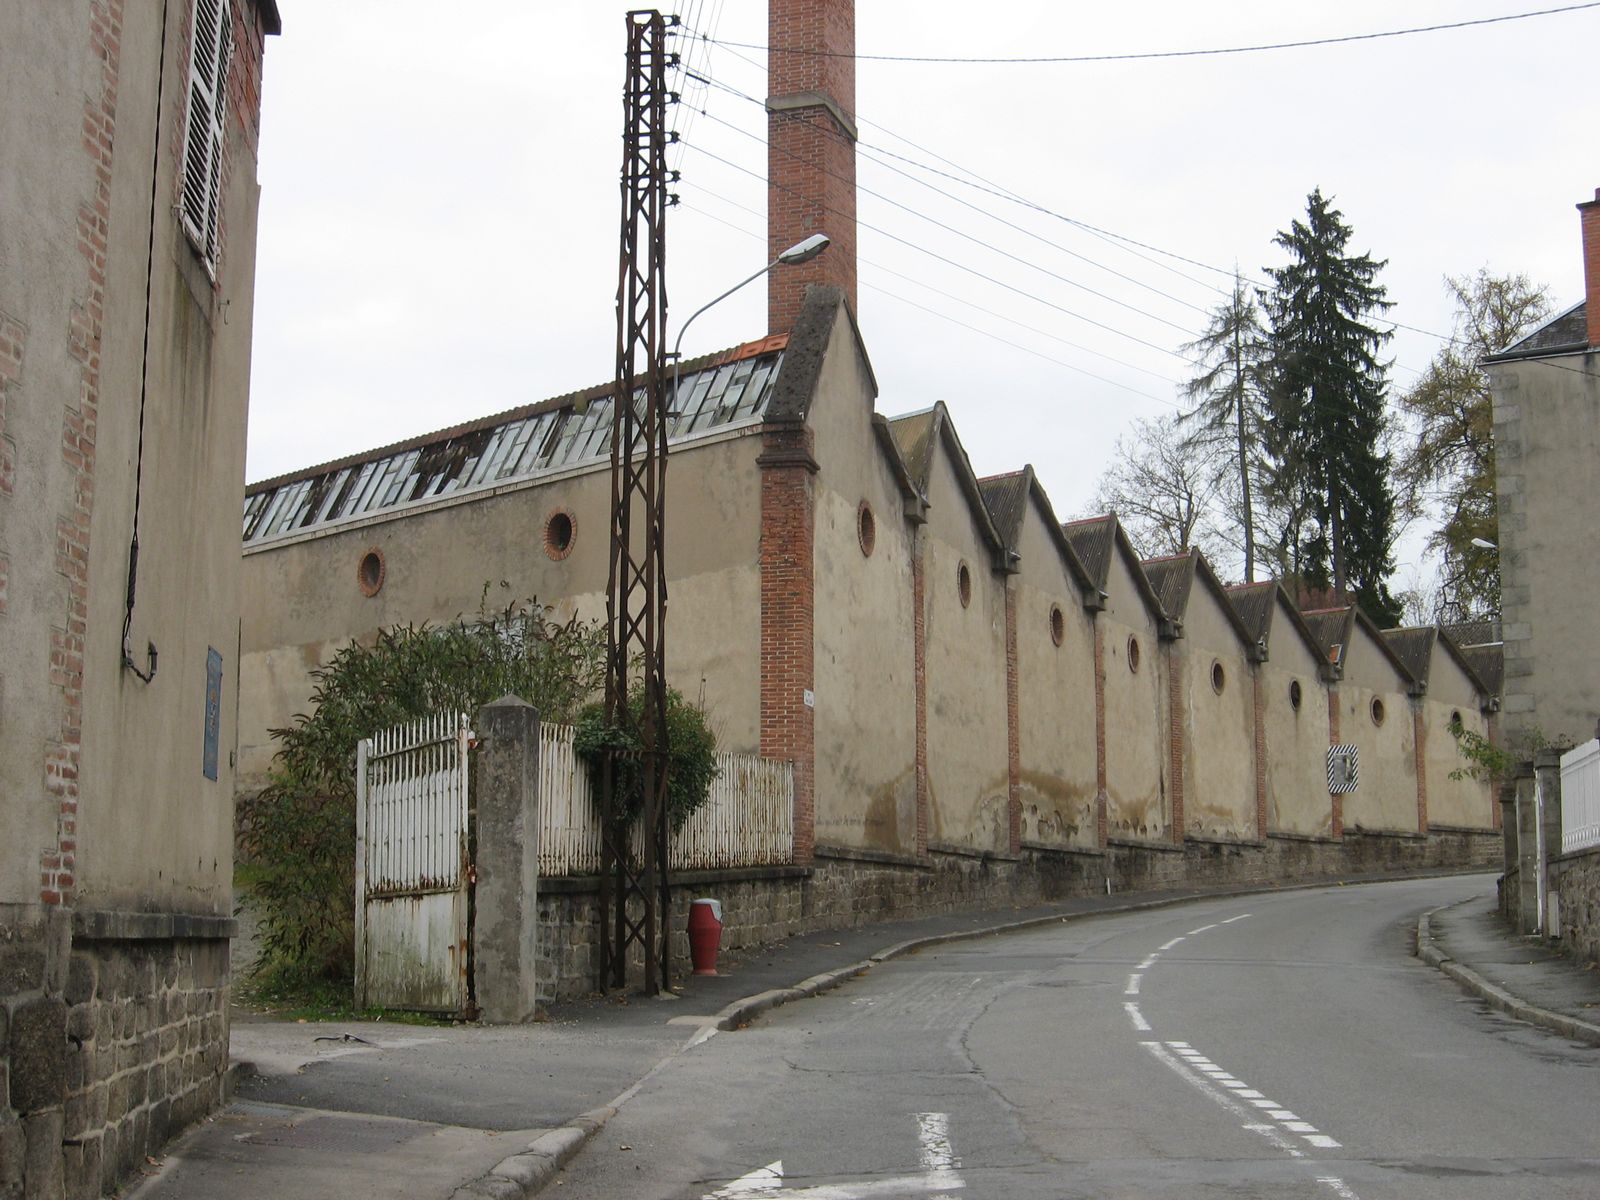 Vue générale des sheds de l'ancienne filature, en direction du sud, vers la chapelle Saint-Jean, avec la courbure des bâtiments épousant celle de la rue